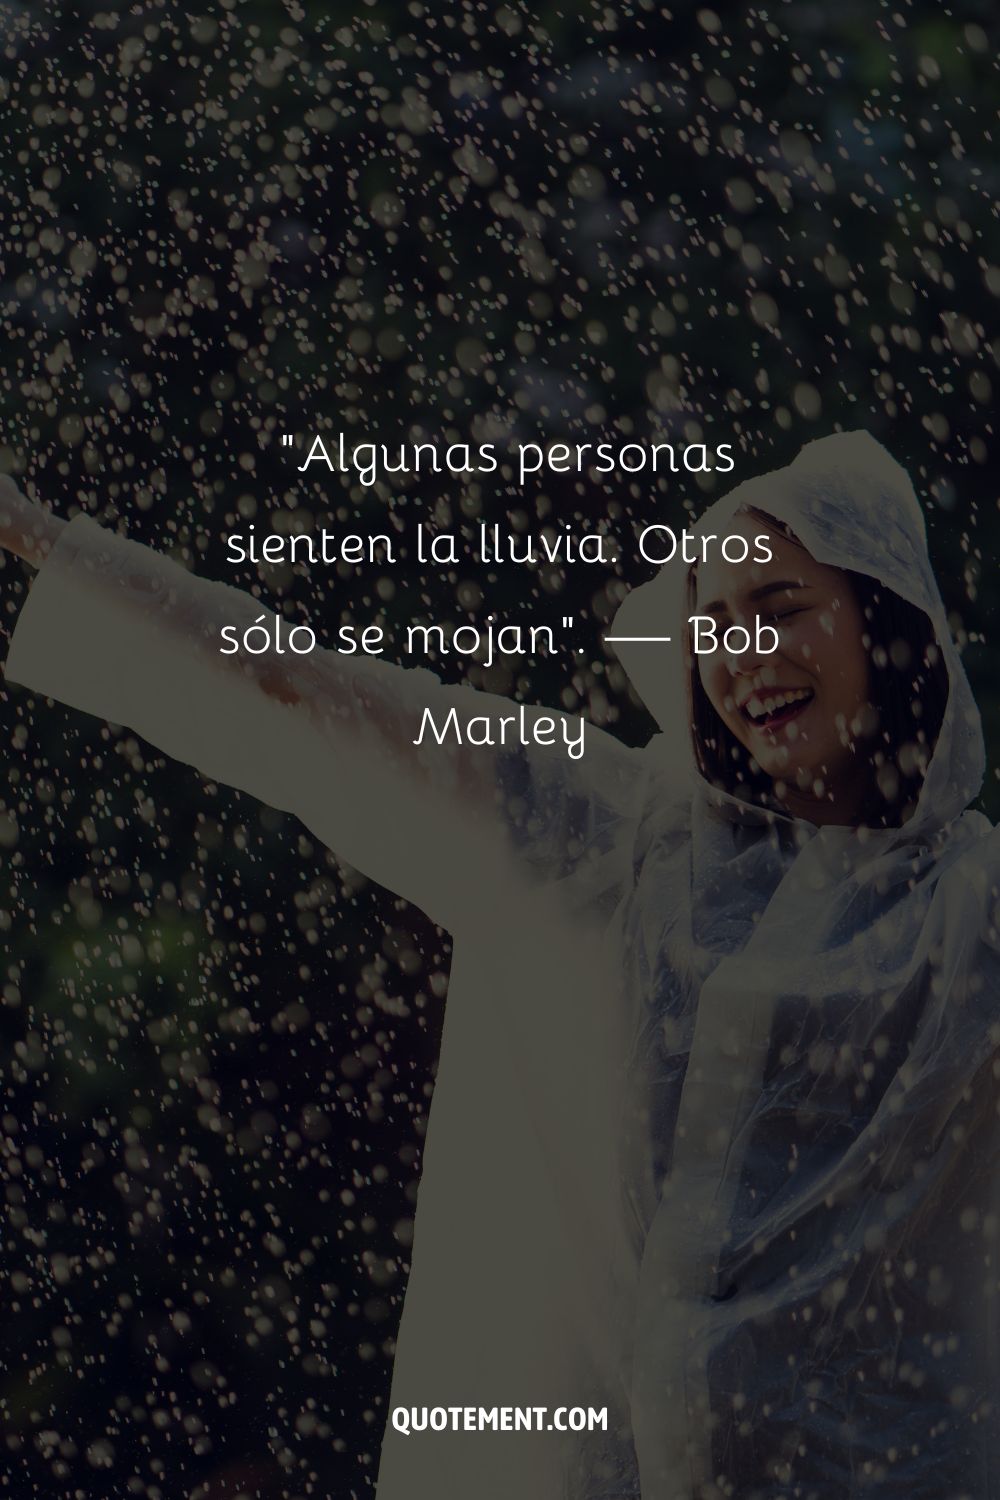 Una mujer alegre de pie bajo la lluvia con los brazos en alto representando una cita sorprendente de un día lluvioso